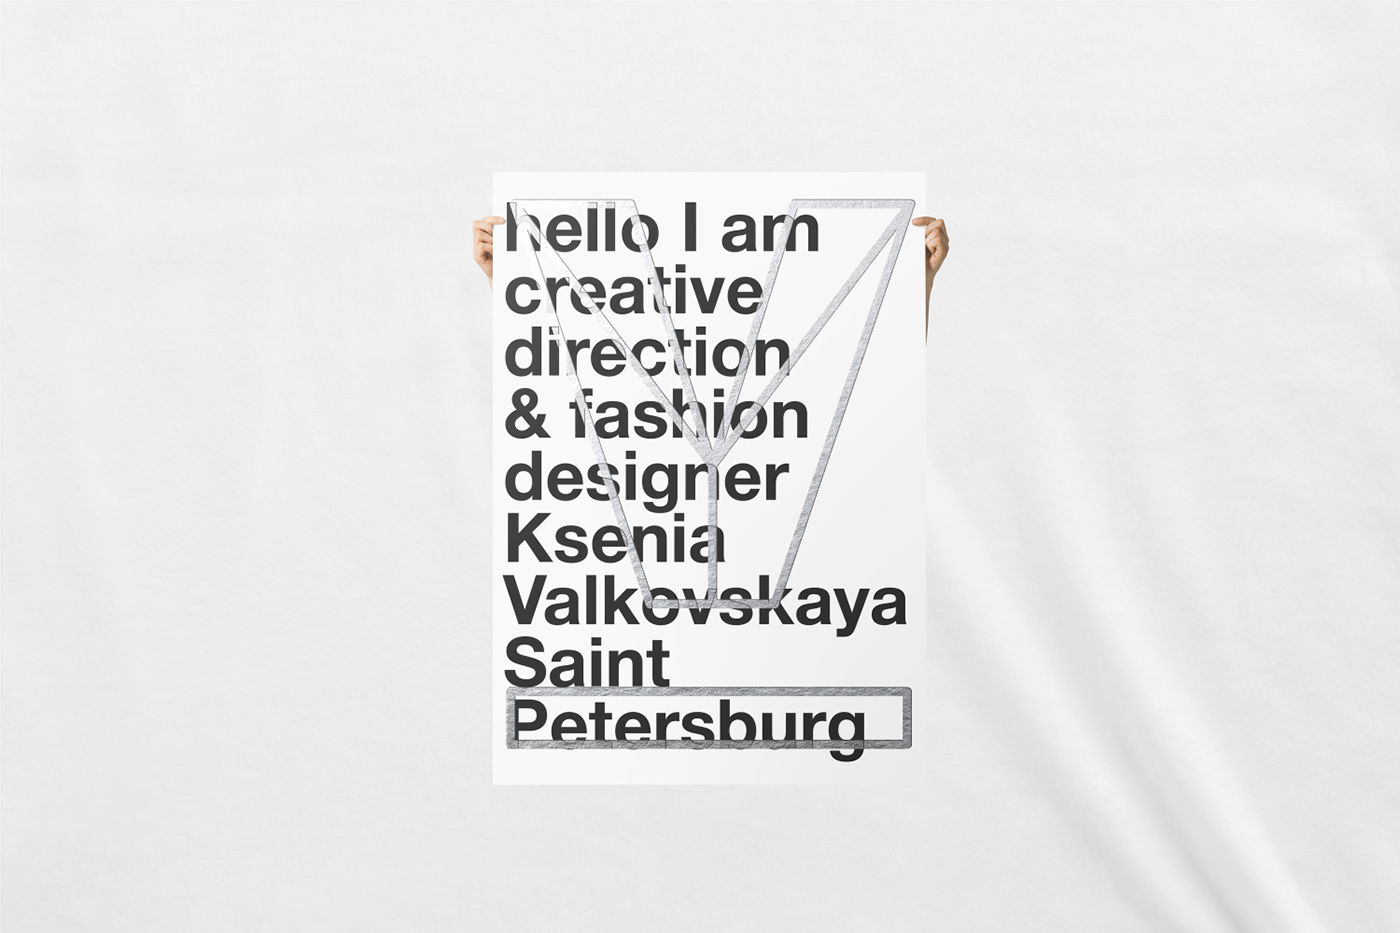 Valkovskaya Fashion  Clothing designer foil stamp Ksenia Valkovskaya creative